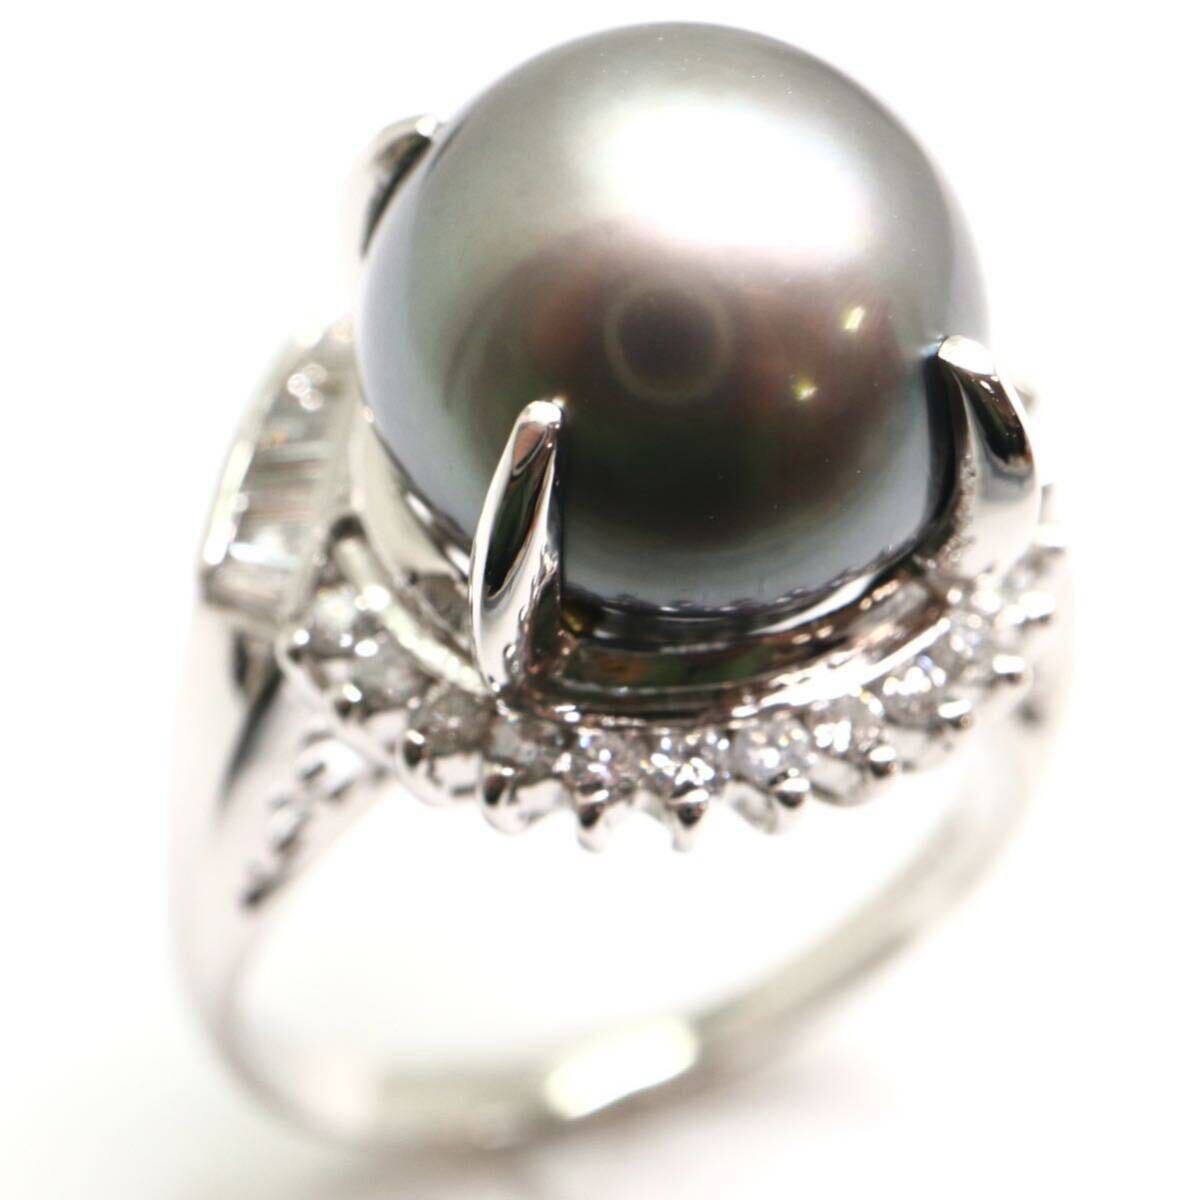 豪華!!《Pt900天然ダイヤモンド/南洋黒蝶真珠リング》M 約11.1g 約16号 0.58ct diamond ring 指輪 jewelry EE6/EF0の画像1